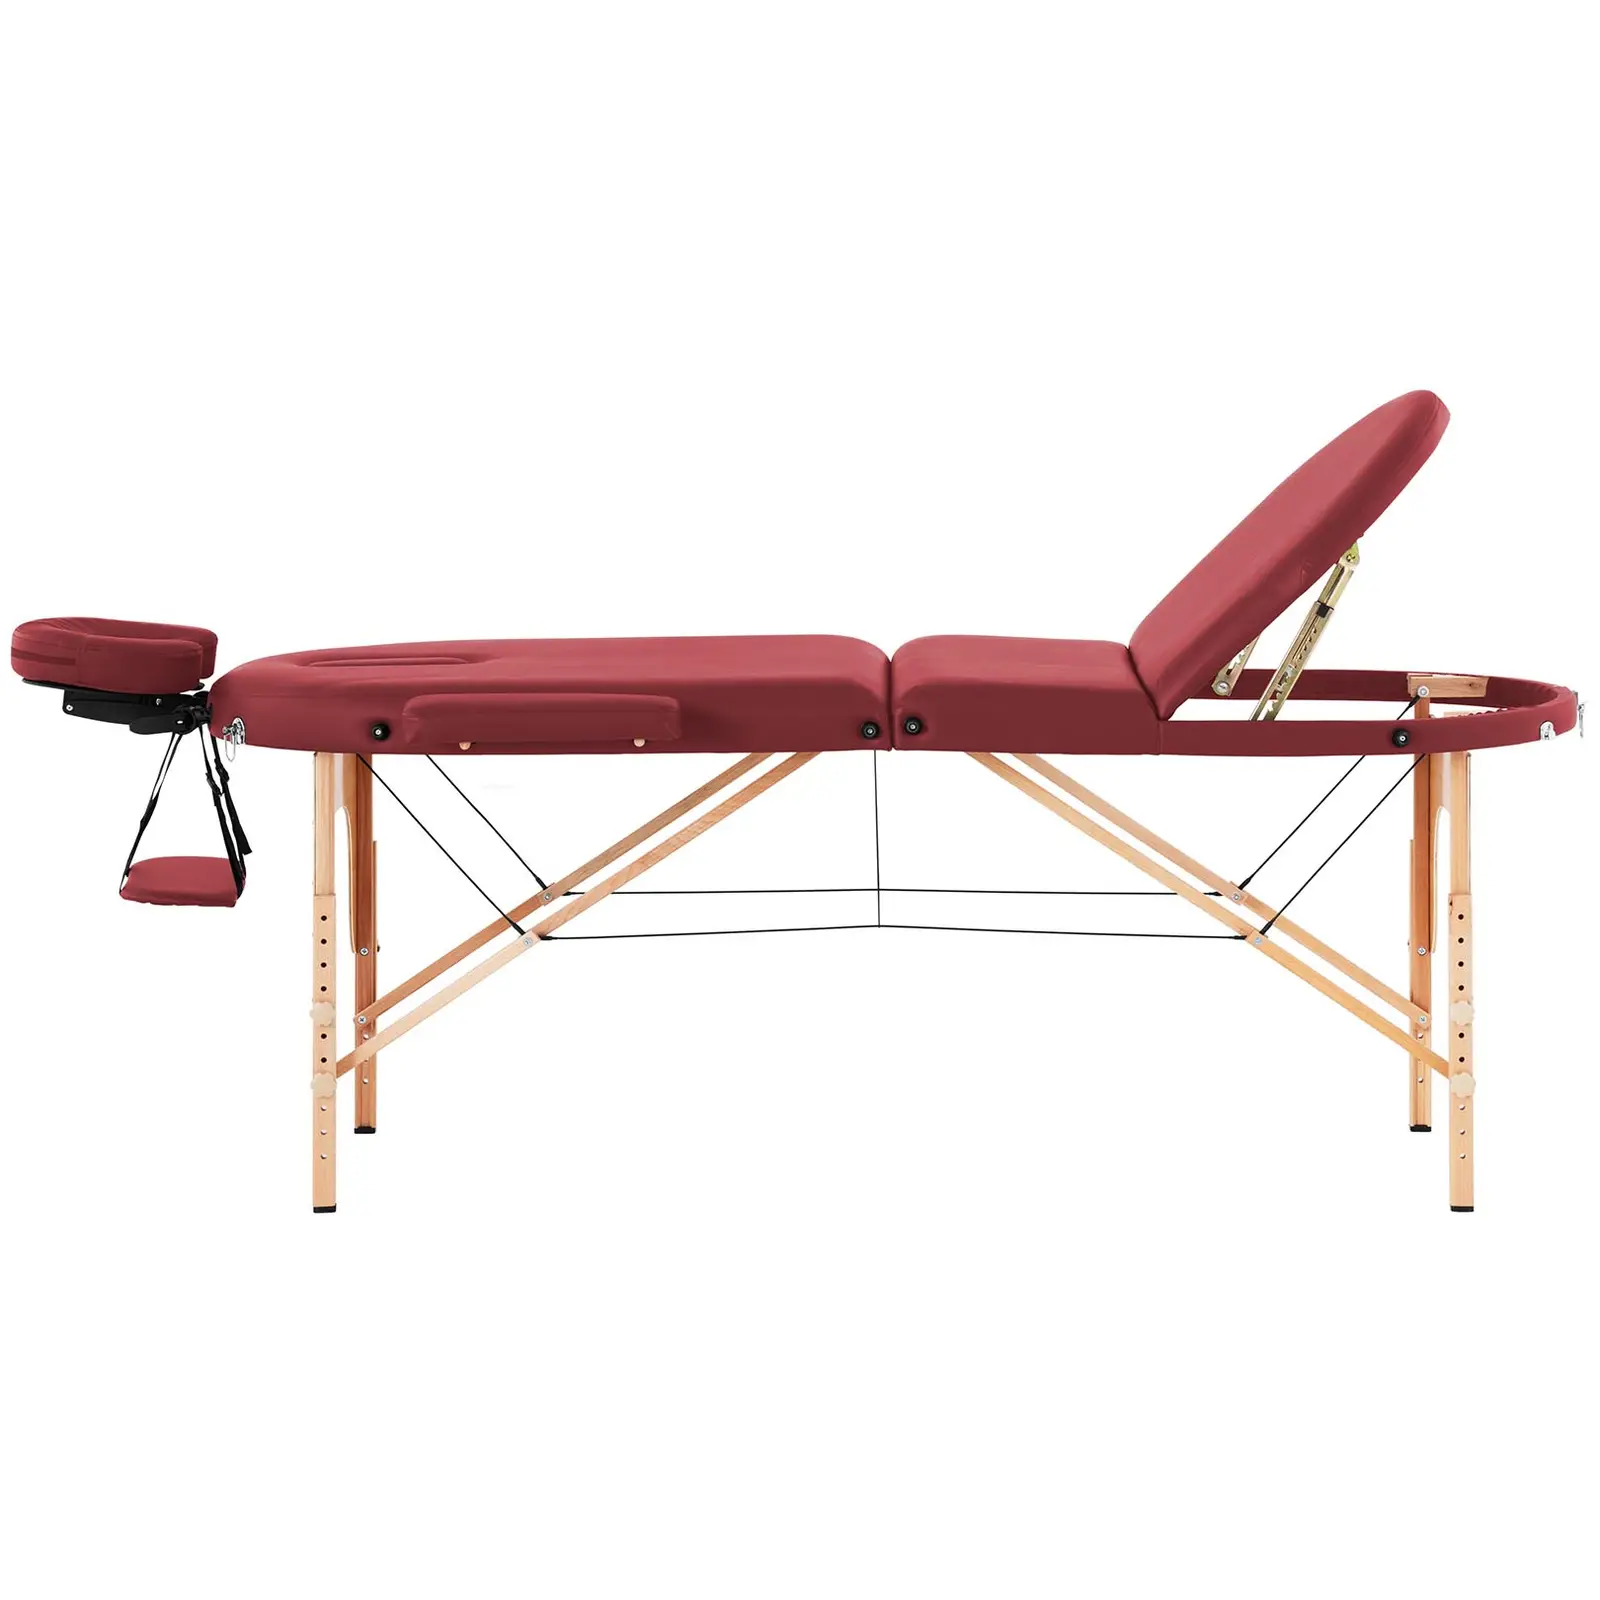 Składany stół do masażu - 185-211 x 70-88 x 63-85  cm - 227 kg - Czerwony